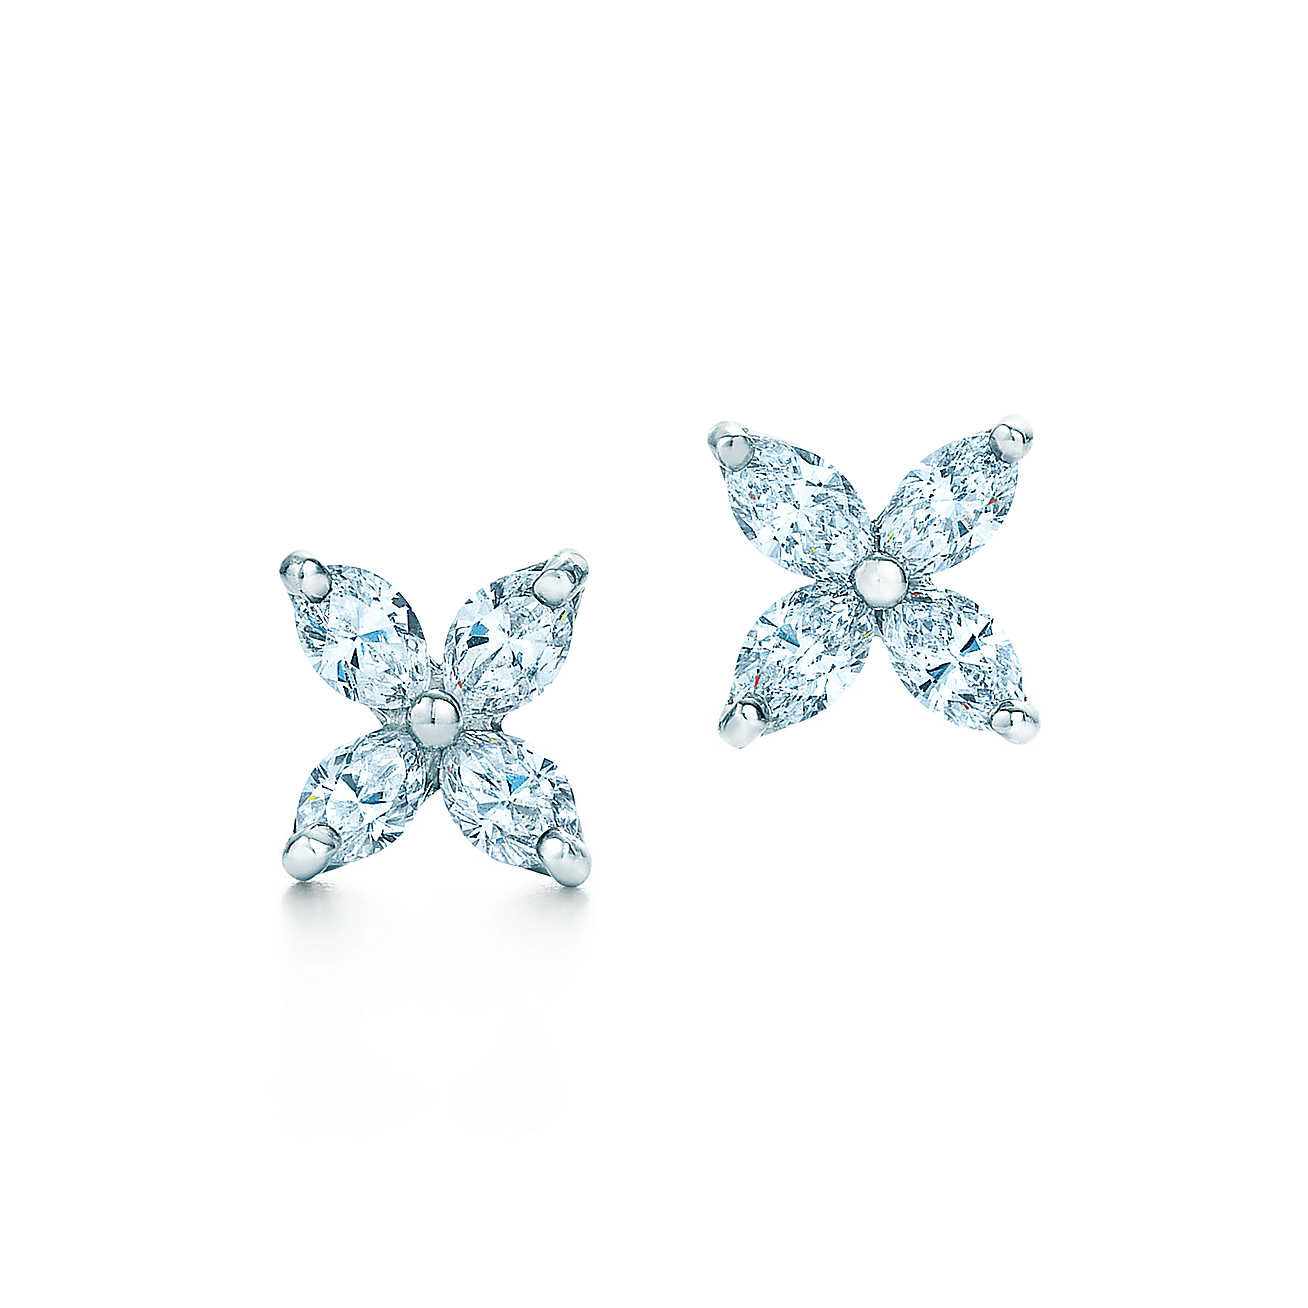 Tiffany Victoria Earrings
 Tiffany Victoria earrings in platinum with diamonds